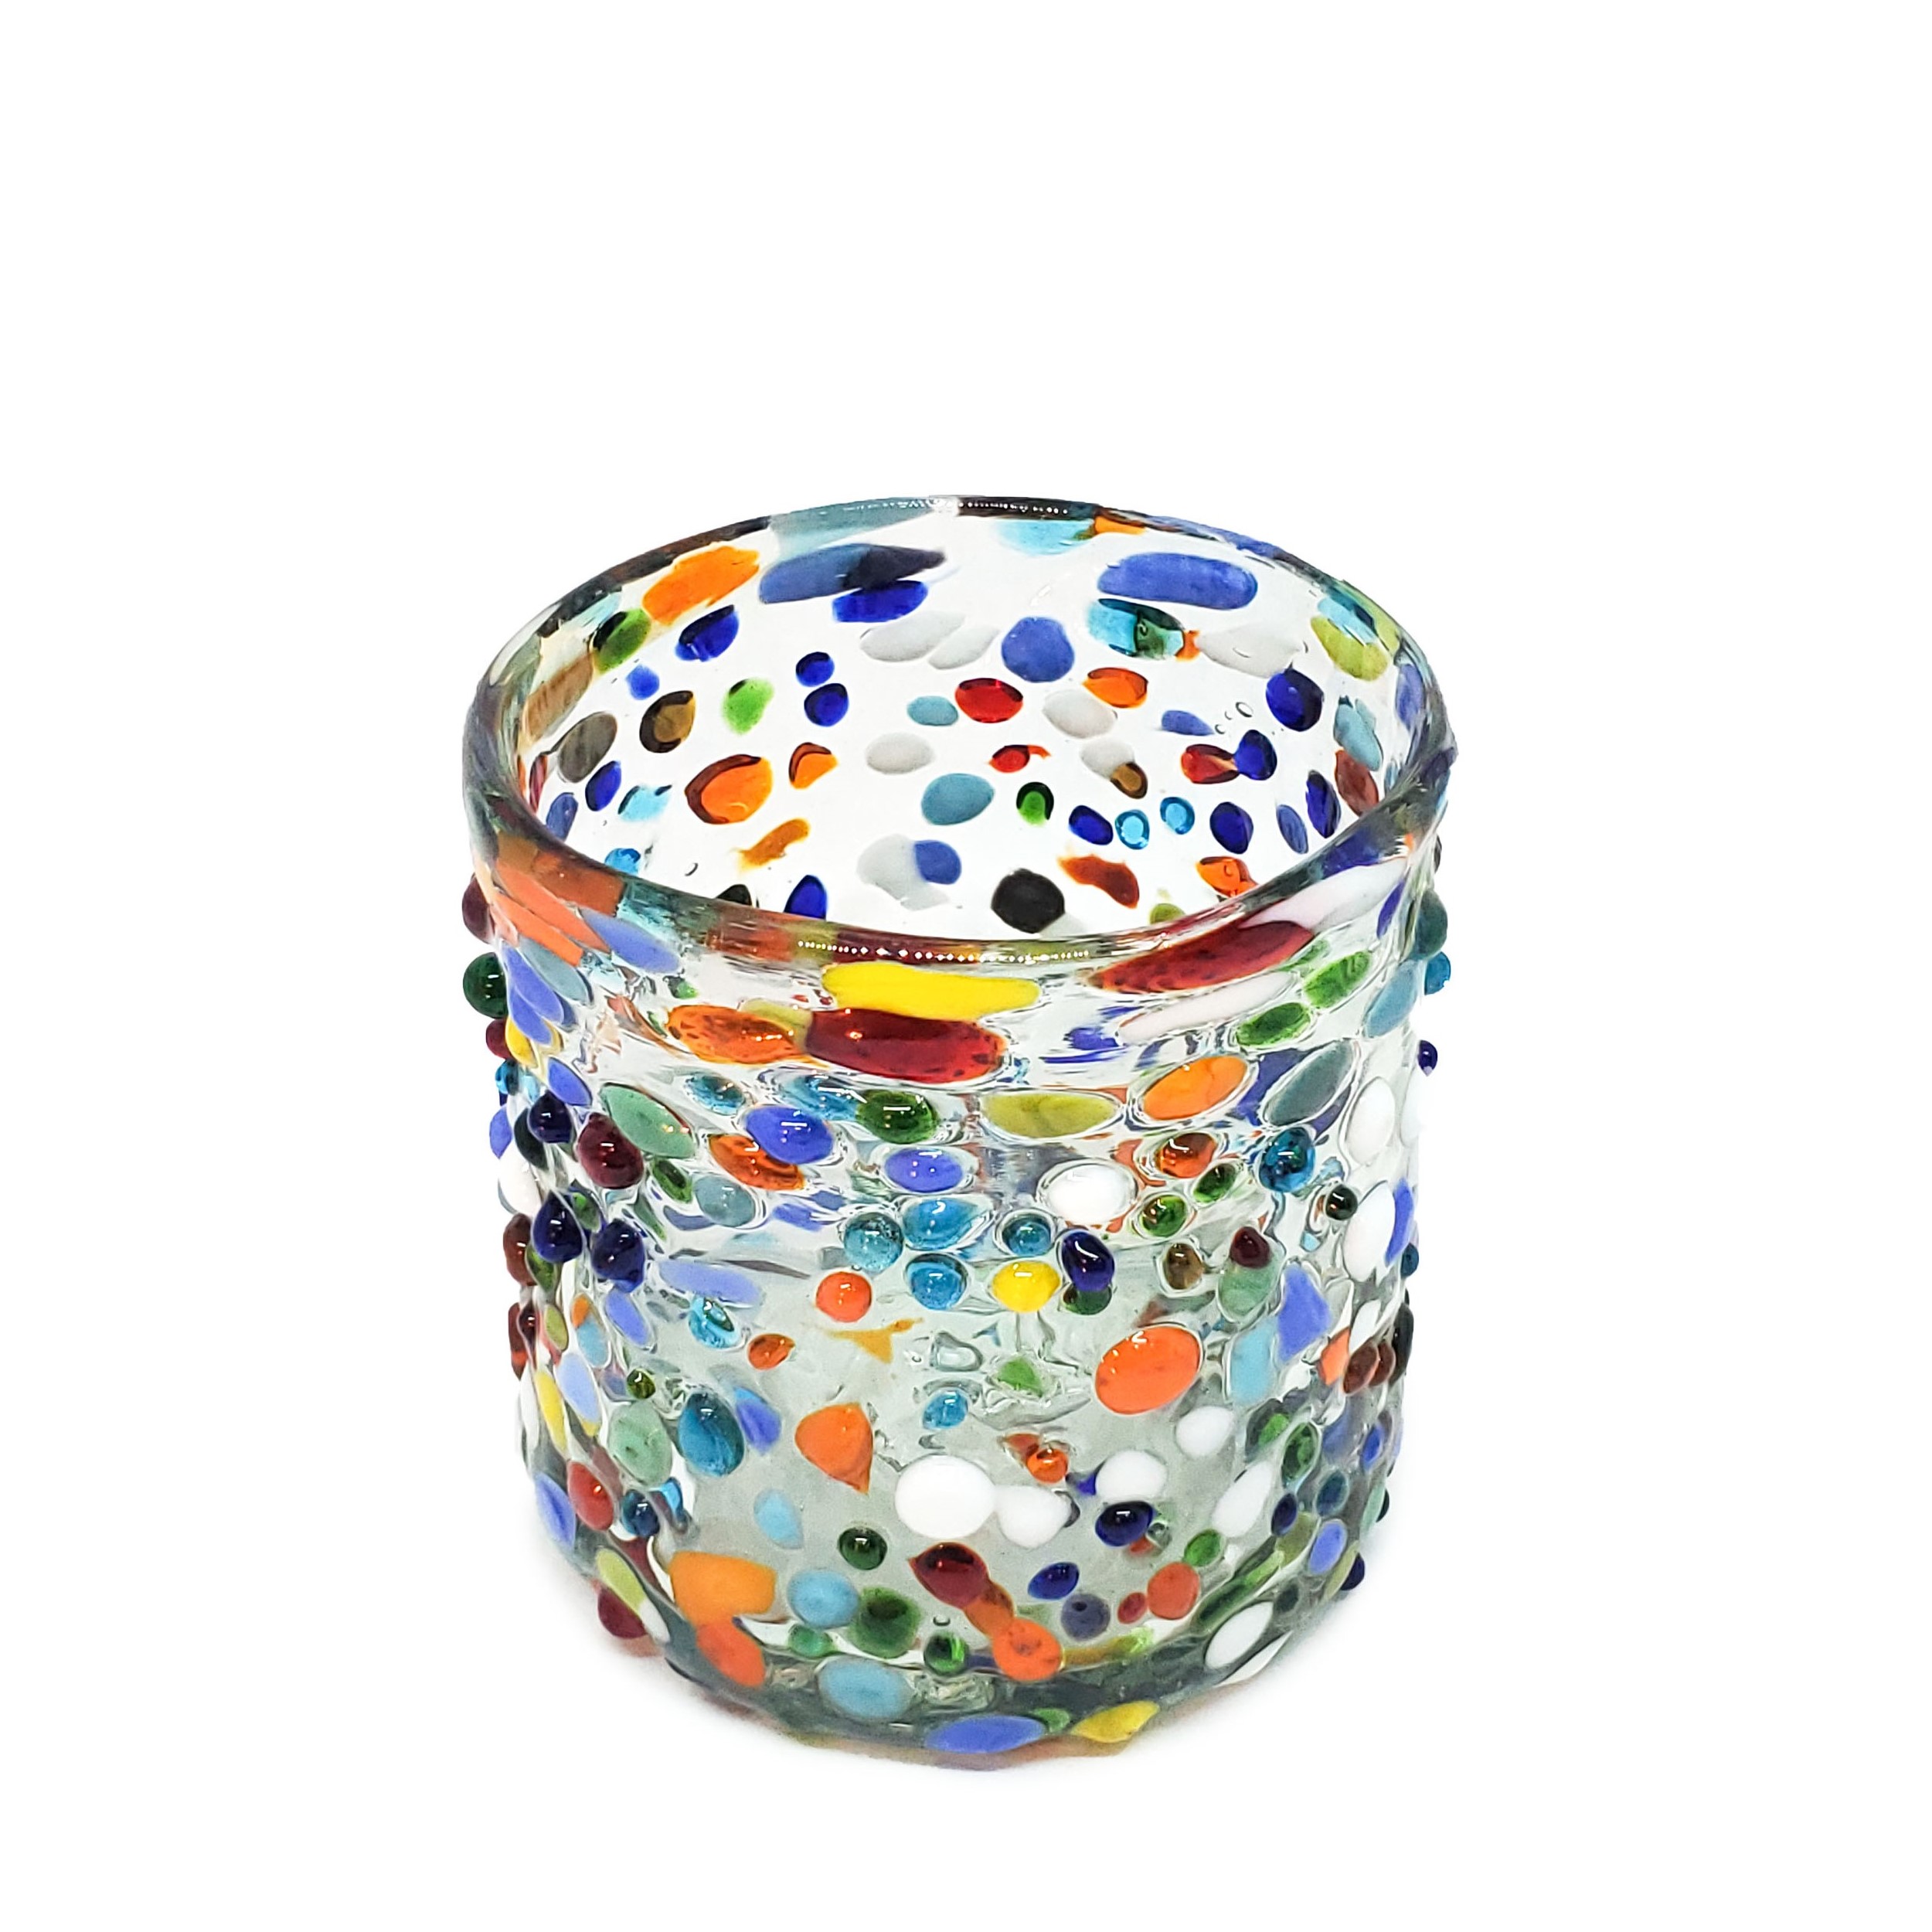 VIDRIO SOPLADO al Mayoreo / vasos DOF 8oz Confeti granizado / Deje entrar a la primavera en su casa con éste colorido juego de vasos. El decorado con vidrio multicolor los hace resaltar en cualquier lugar.